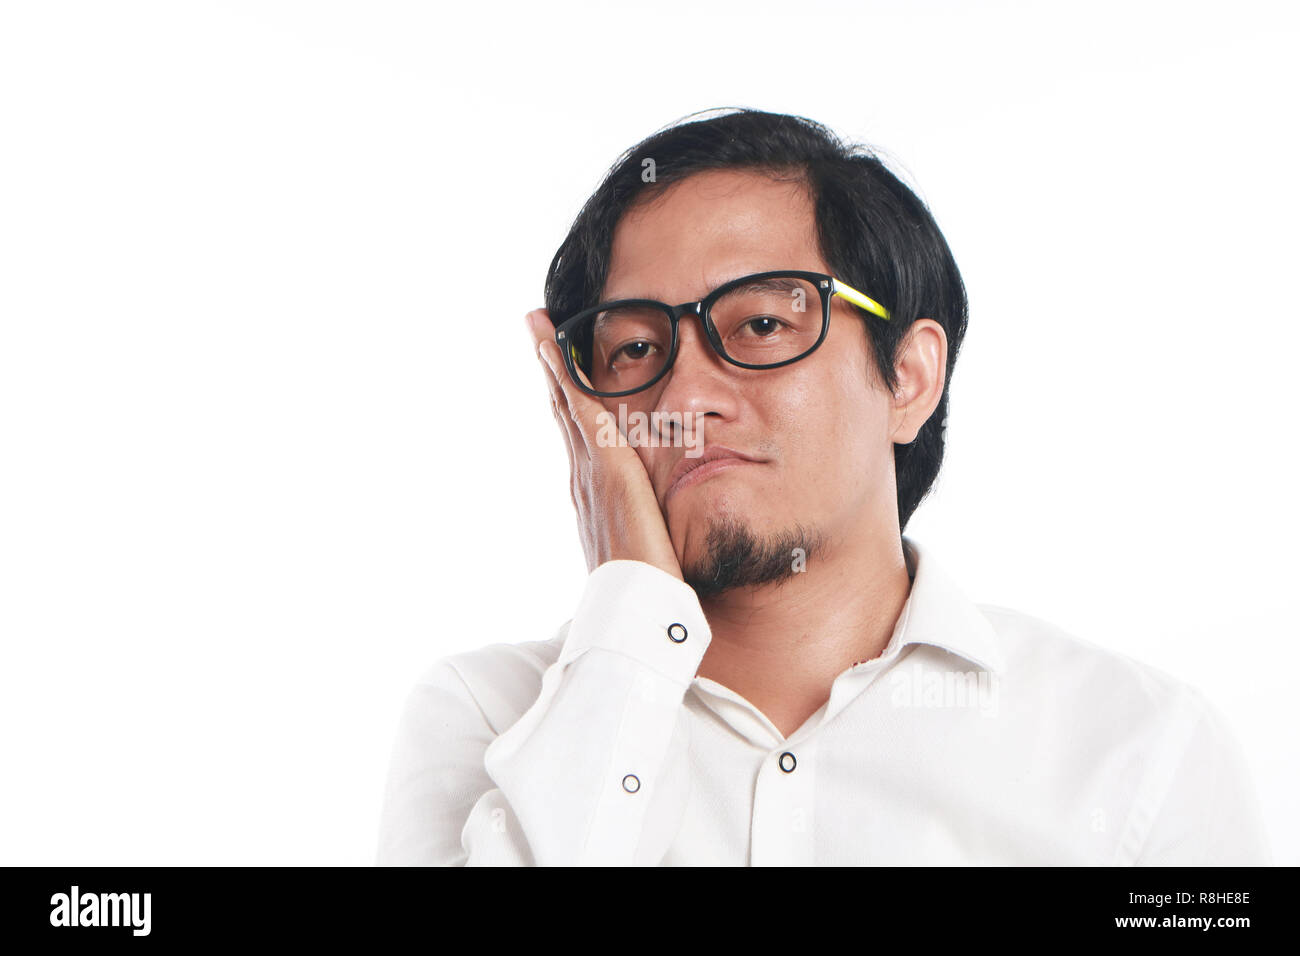 Foto immagine ritratto di un divertente giovane imprenditore asiatica con gli occhiali sembrava molto annoiato o avere mal di denti, close up verticale che mostra il volto triste e con Foto Stock